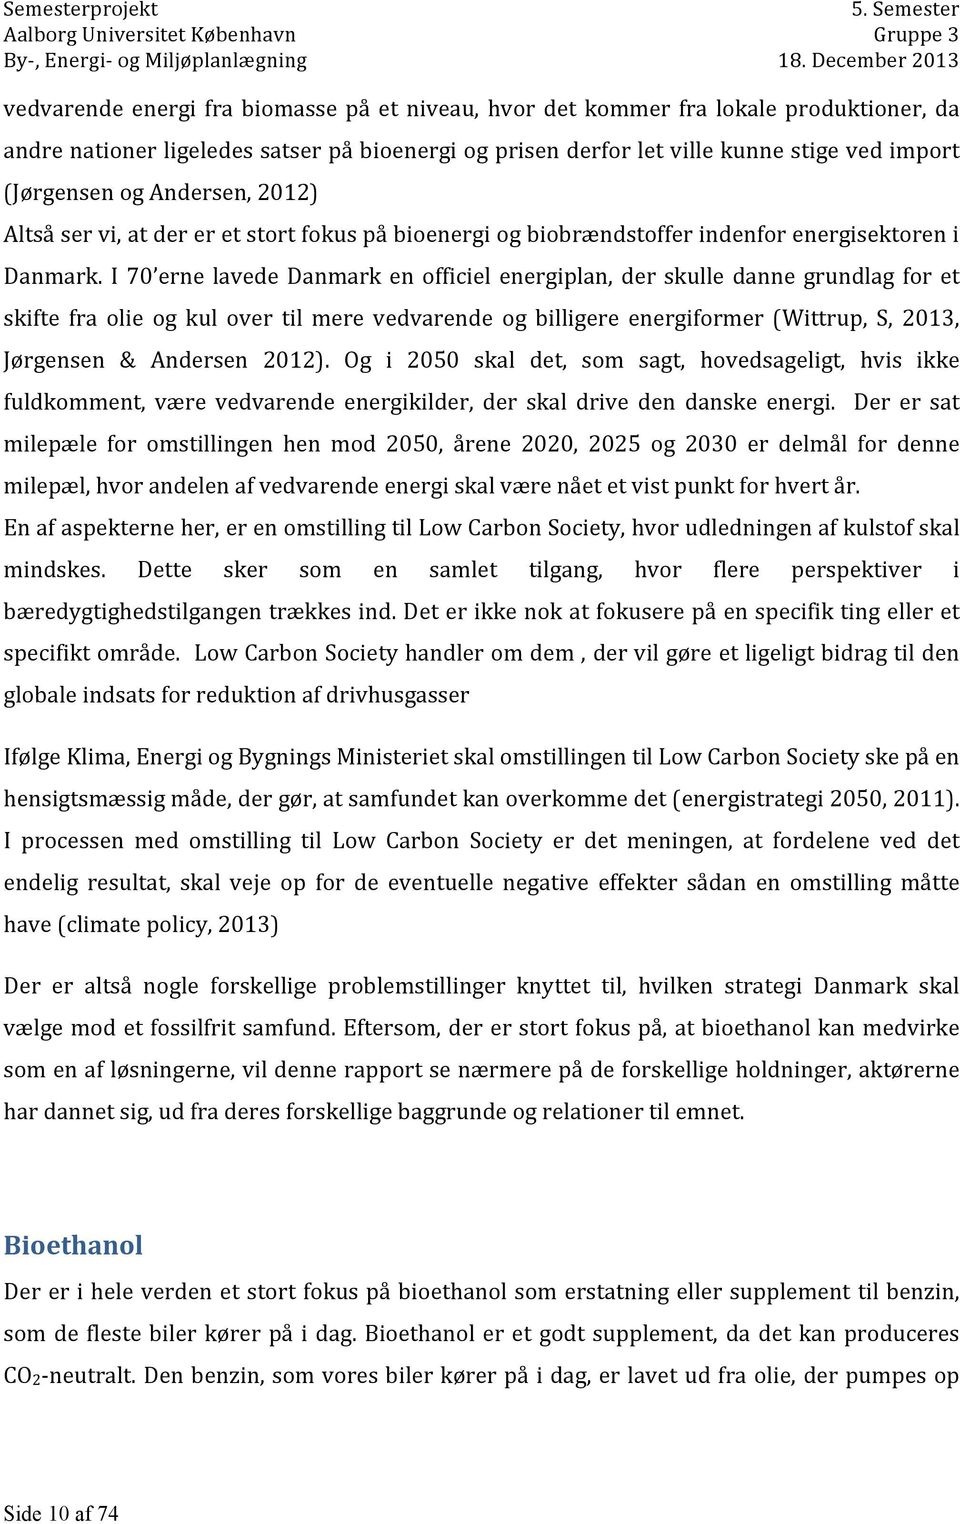 I 70 erne lavede Danmark en officiel energiplan, der skulle danne grundlag for et skifte fra olie og kul over til mere vedvarende og billigere energiformer (Wittrup, S, 2013, Jørgensen & Andersen